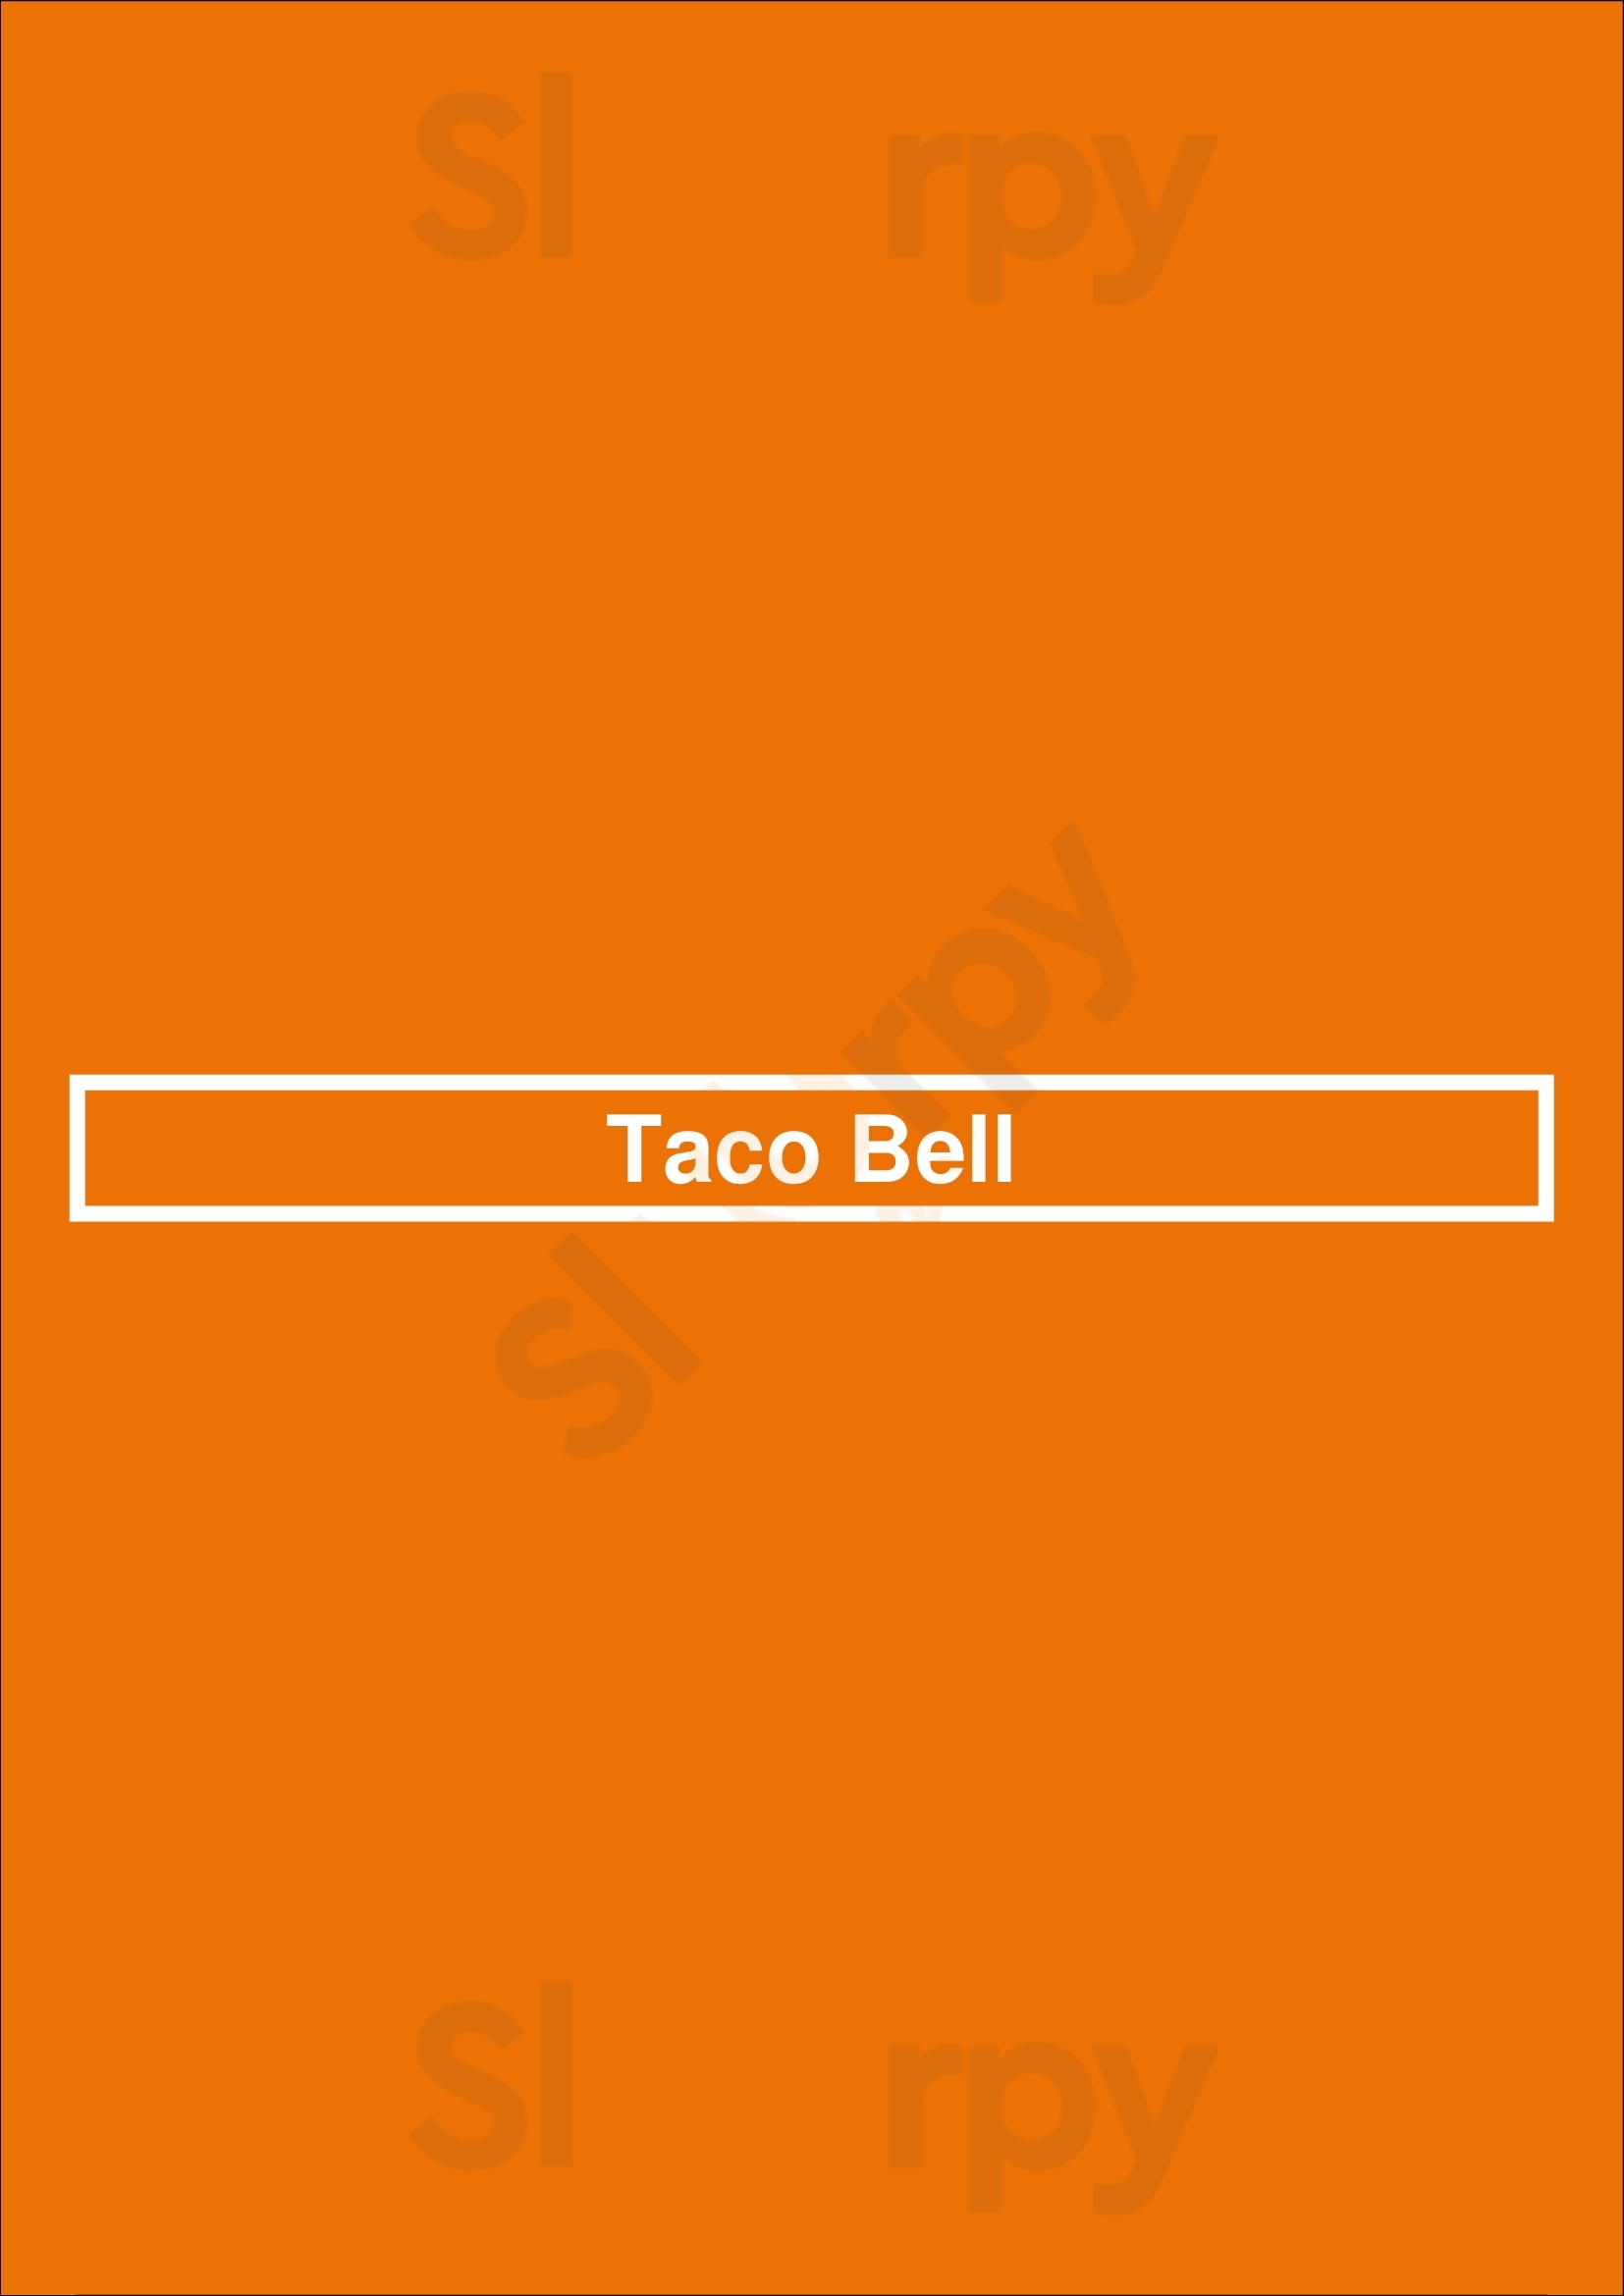 Taco Bell Pasadena Menu - 1